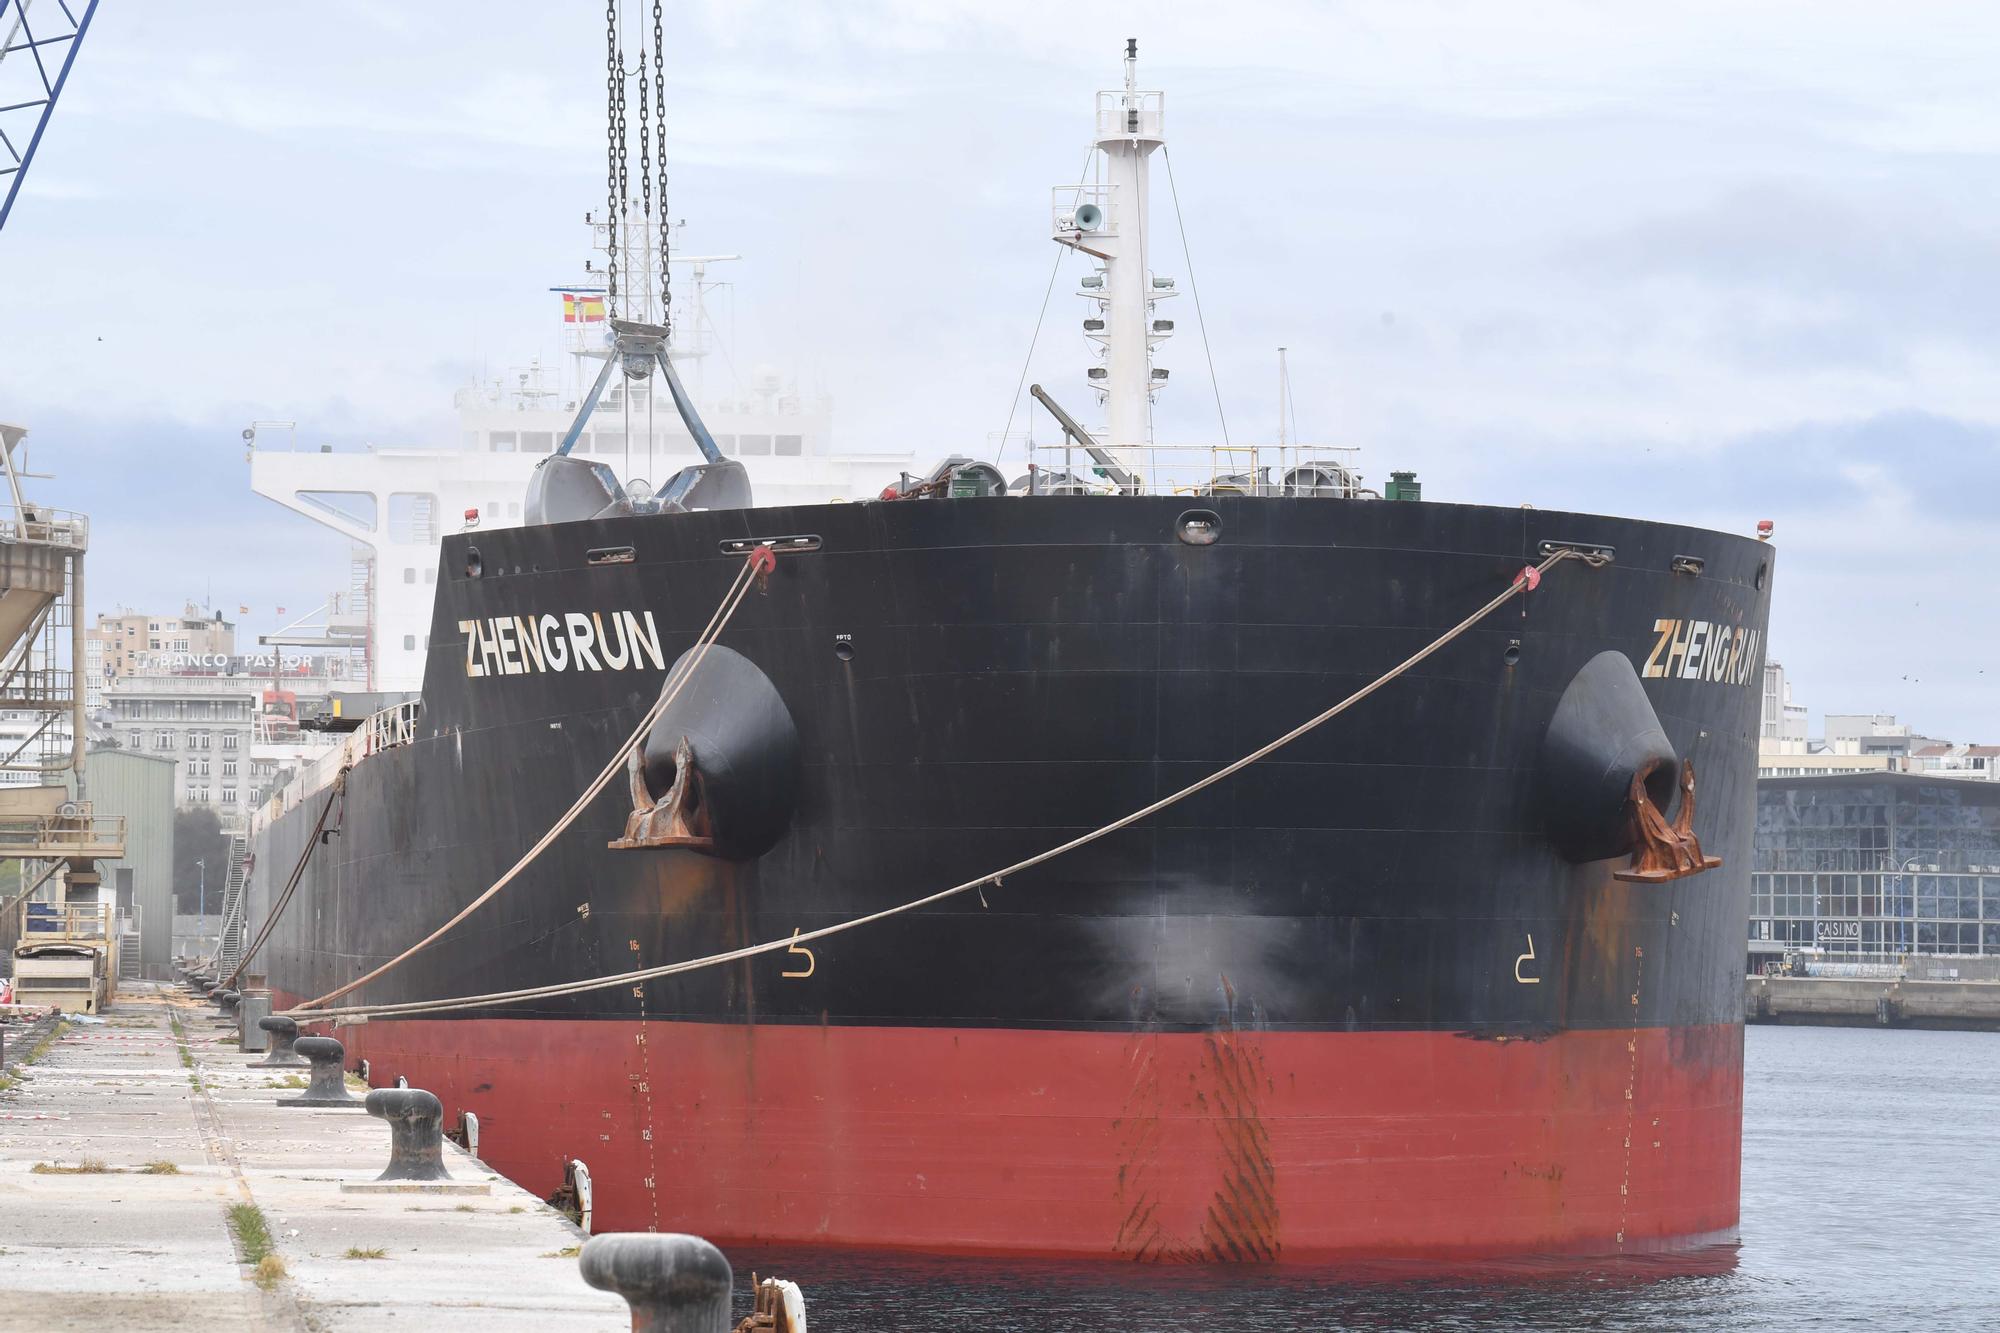 El buque Zheng Run, atracado en A Coruña